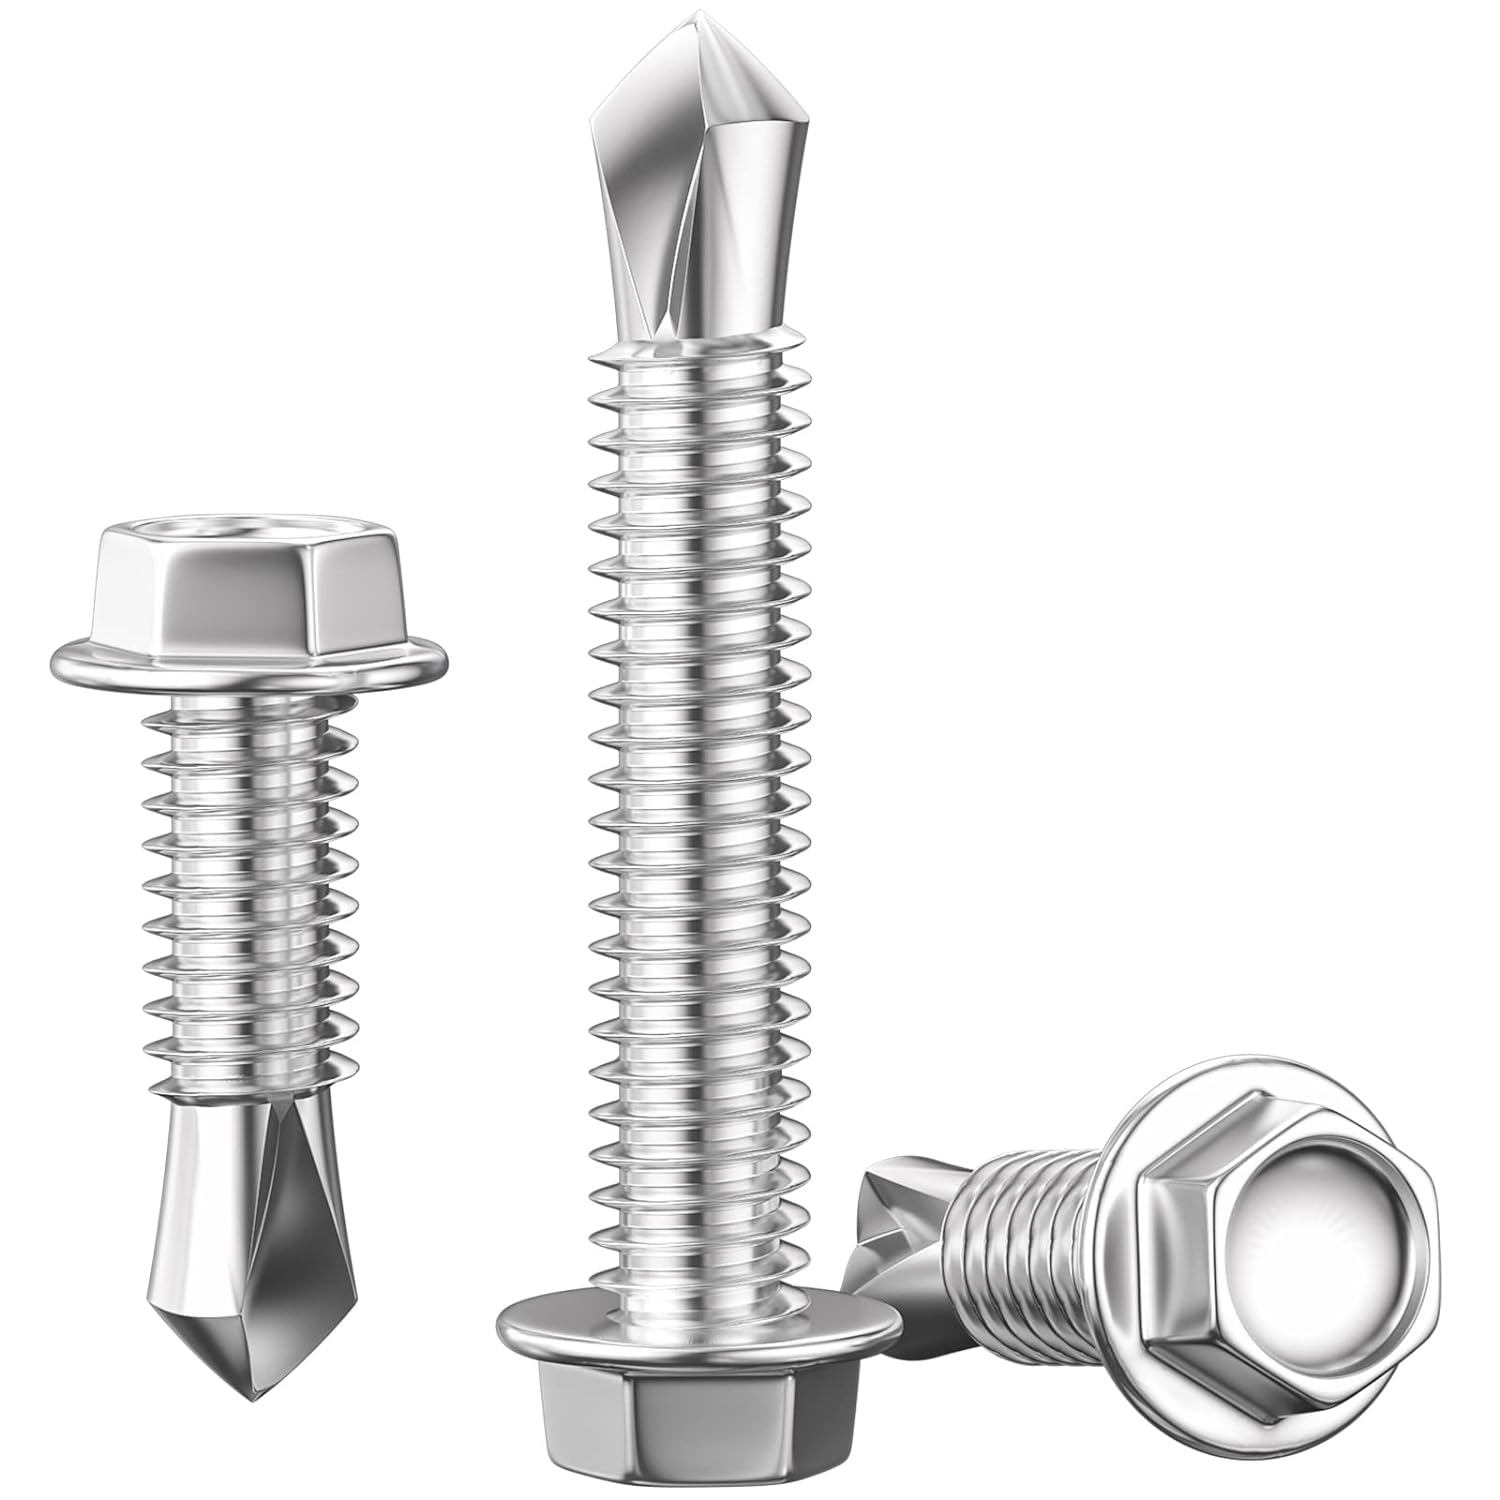 Stock image of three sheet metal screws.